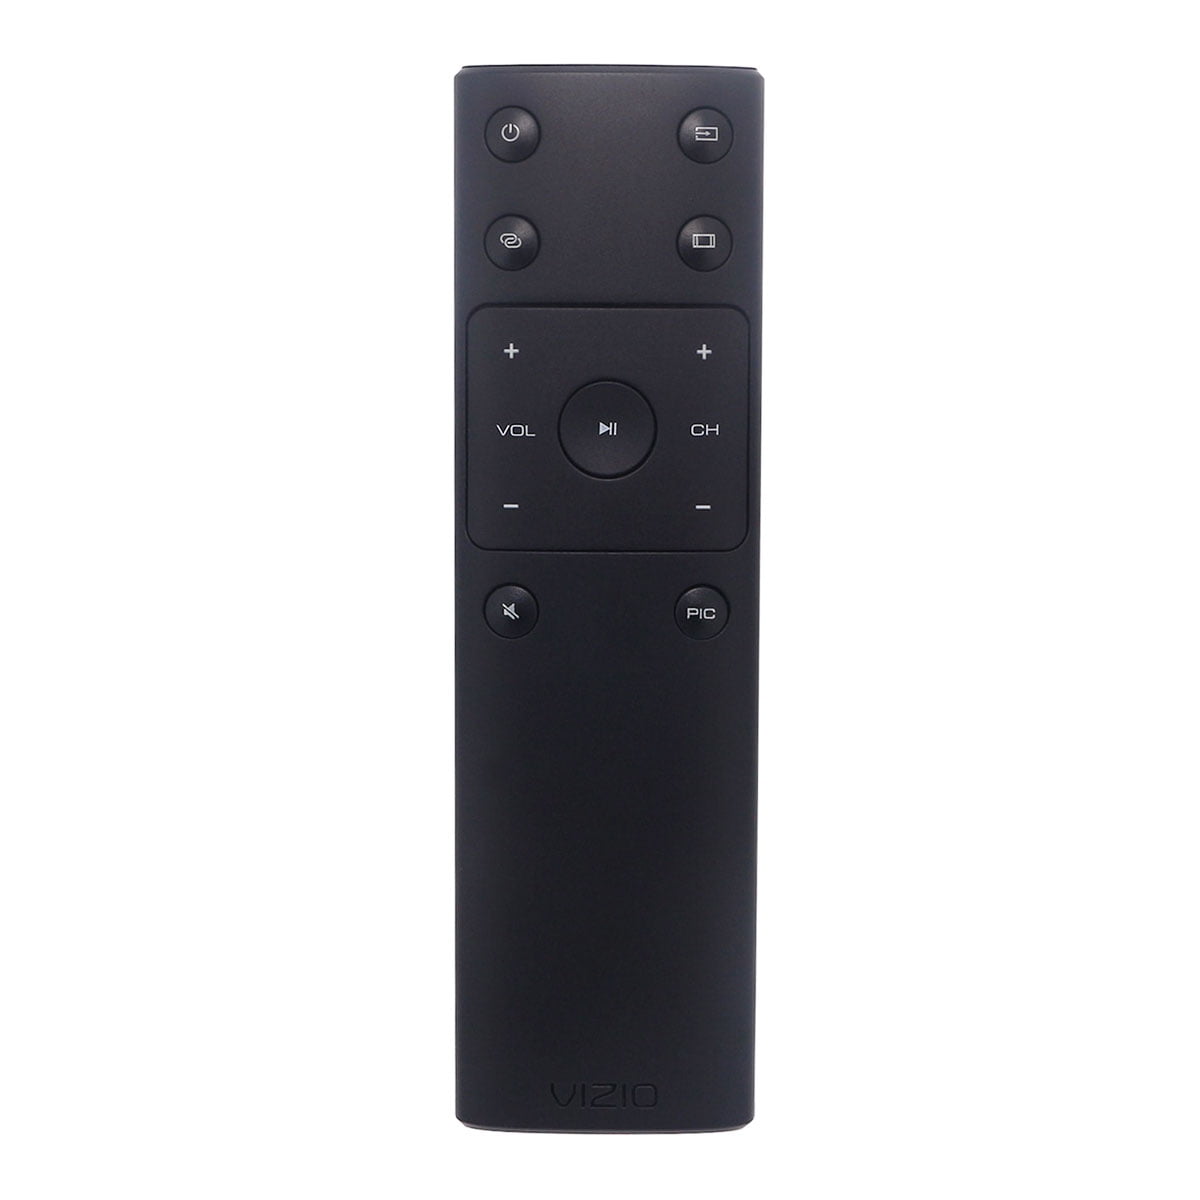 DEHA Replacement Smart TV Remote Control for VIZIO E60-E3 Television